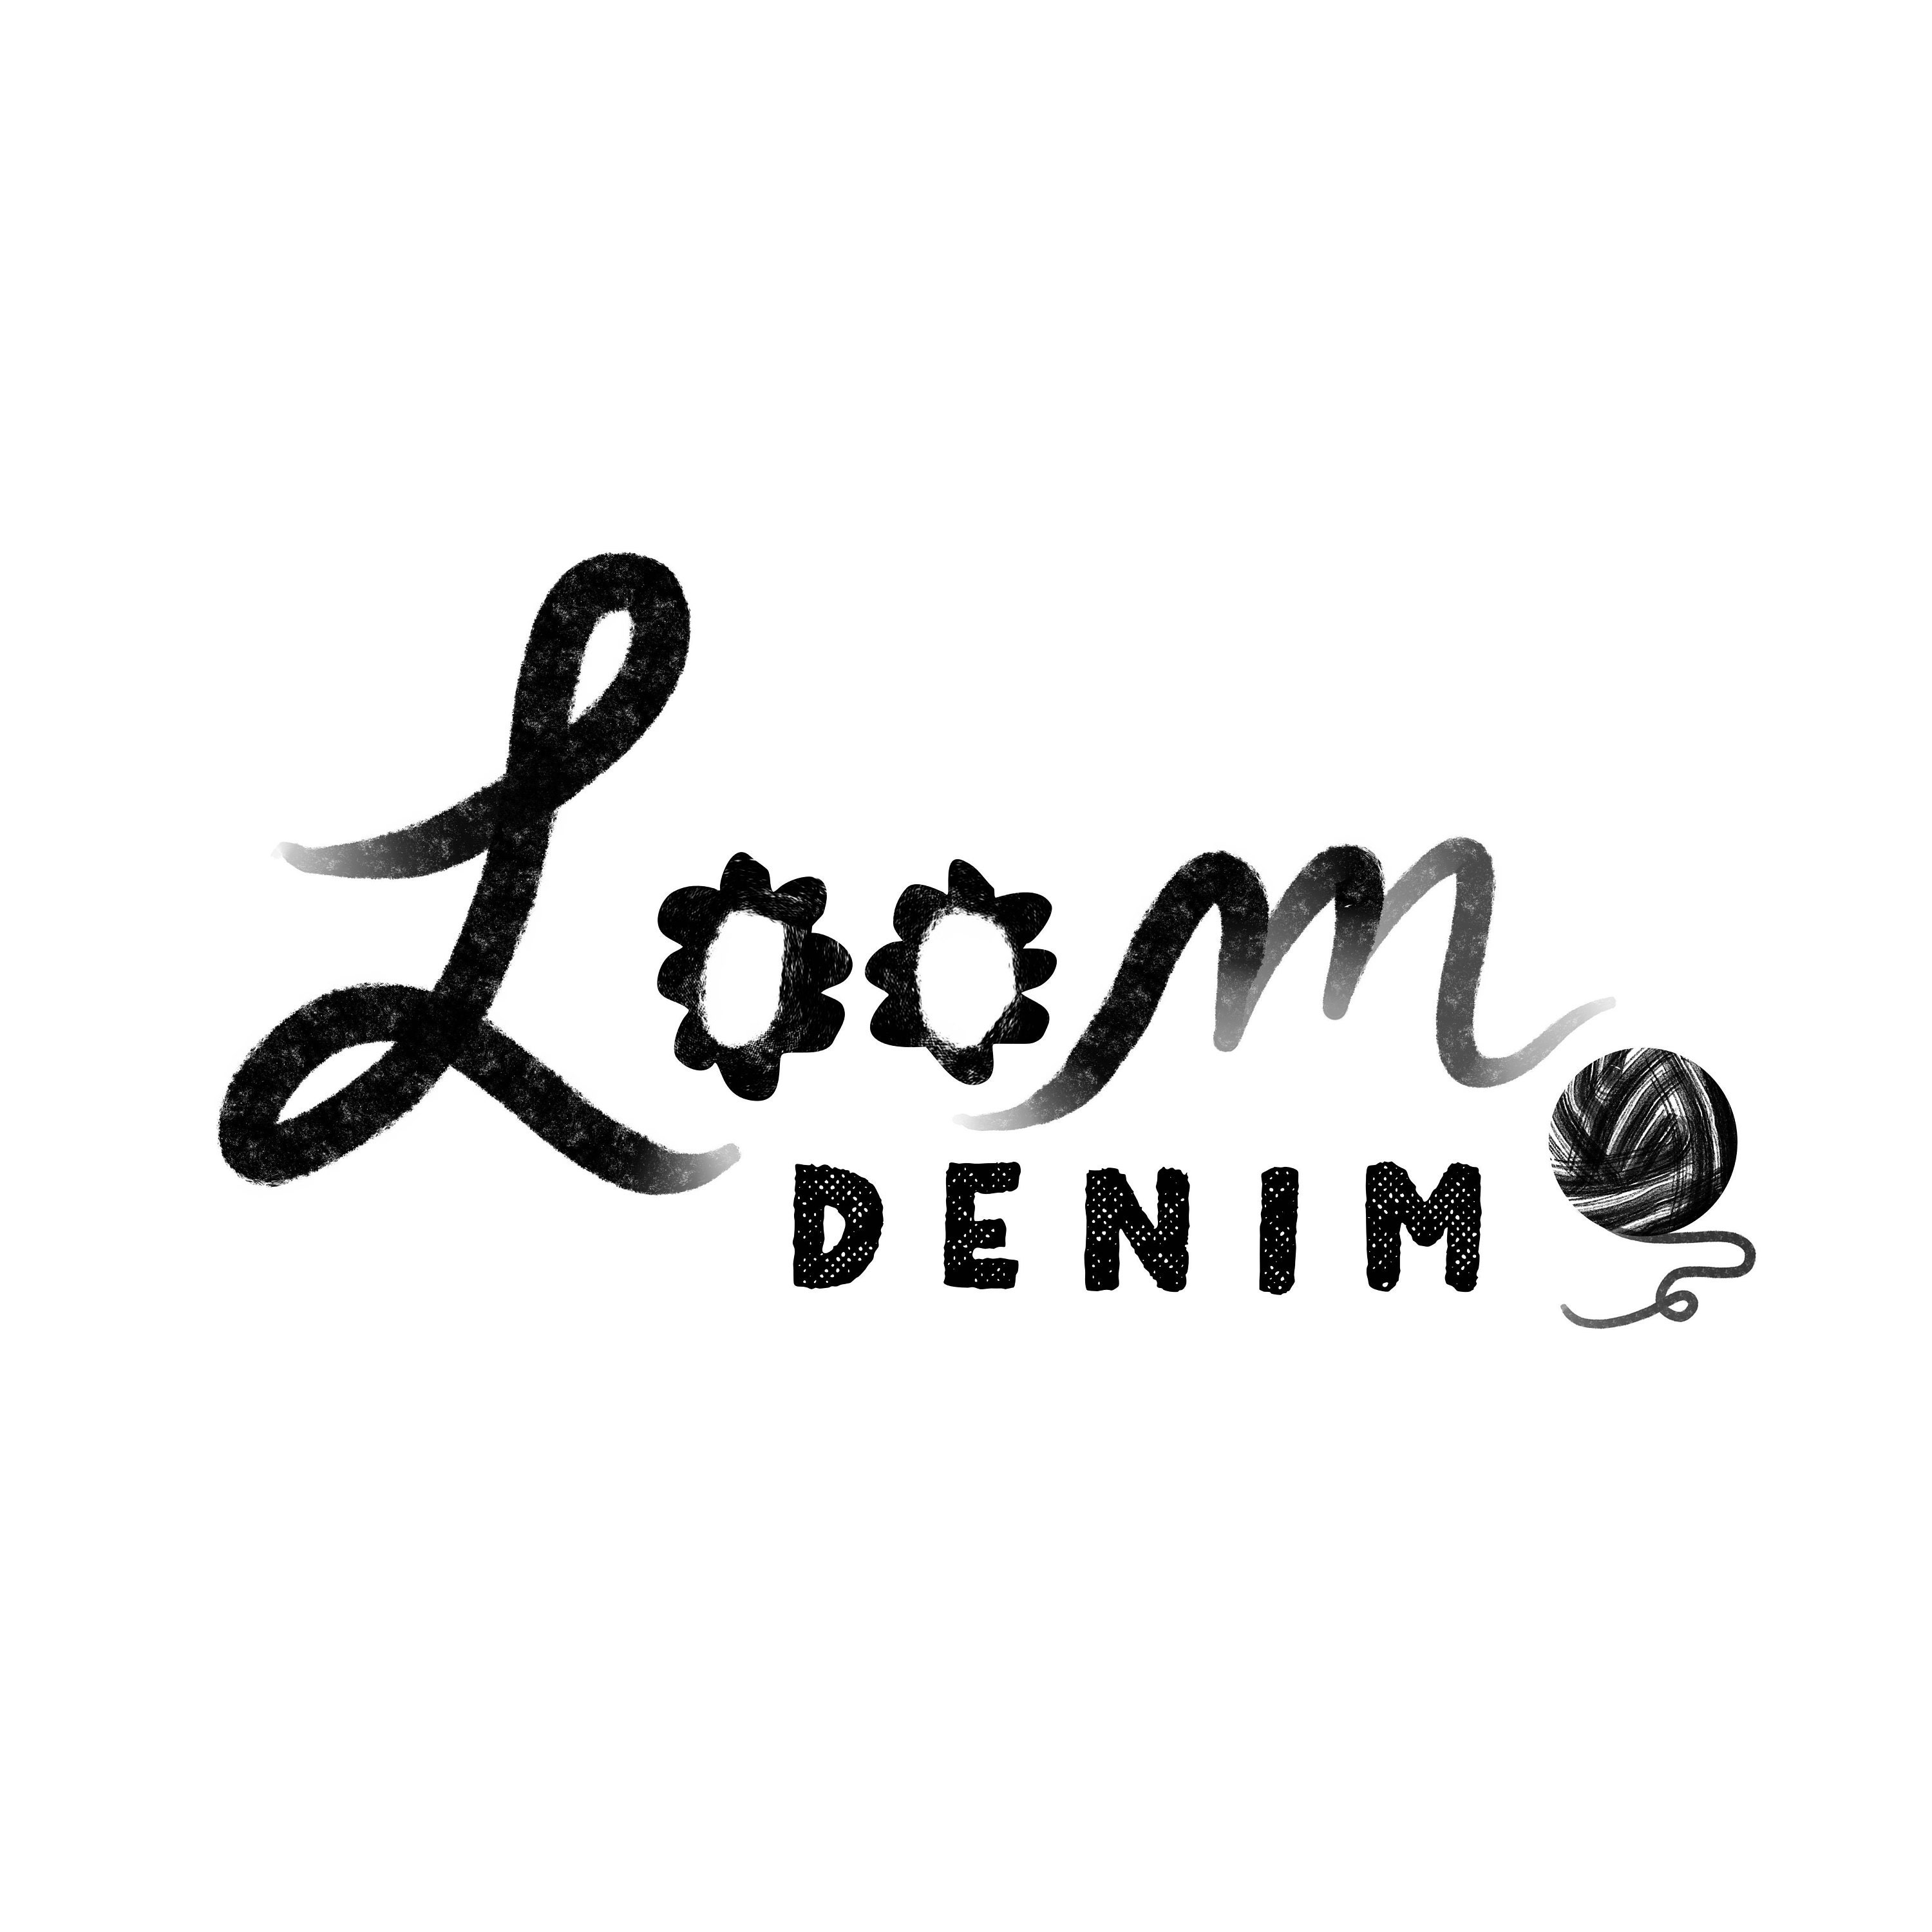 Create a logo for prime denim | Logo design contest | 99designs